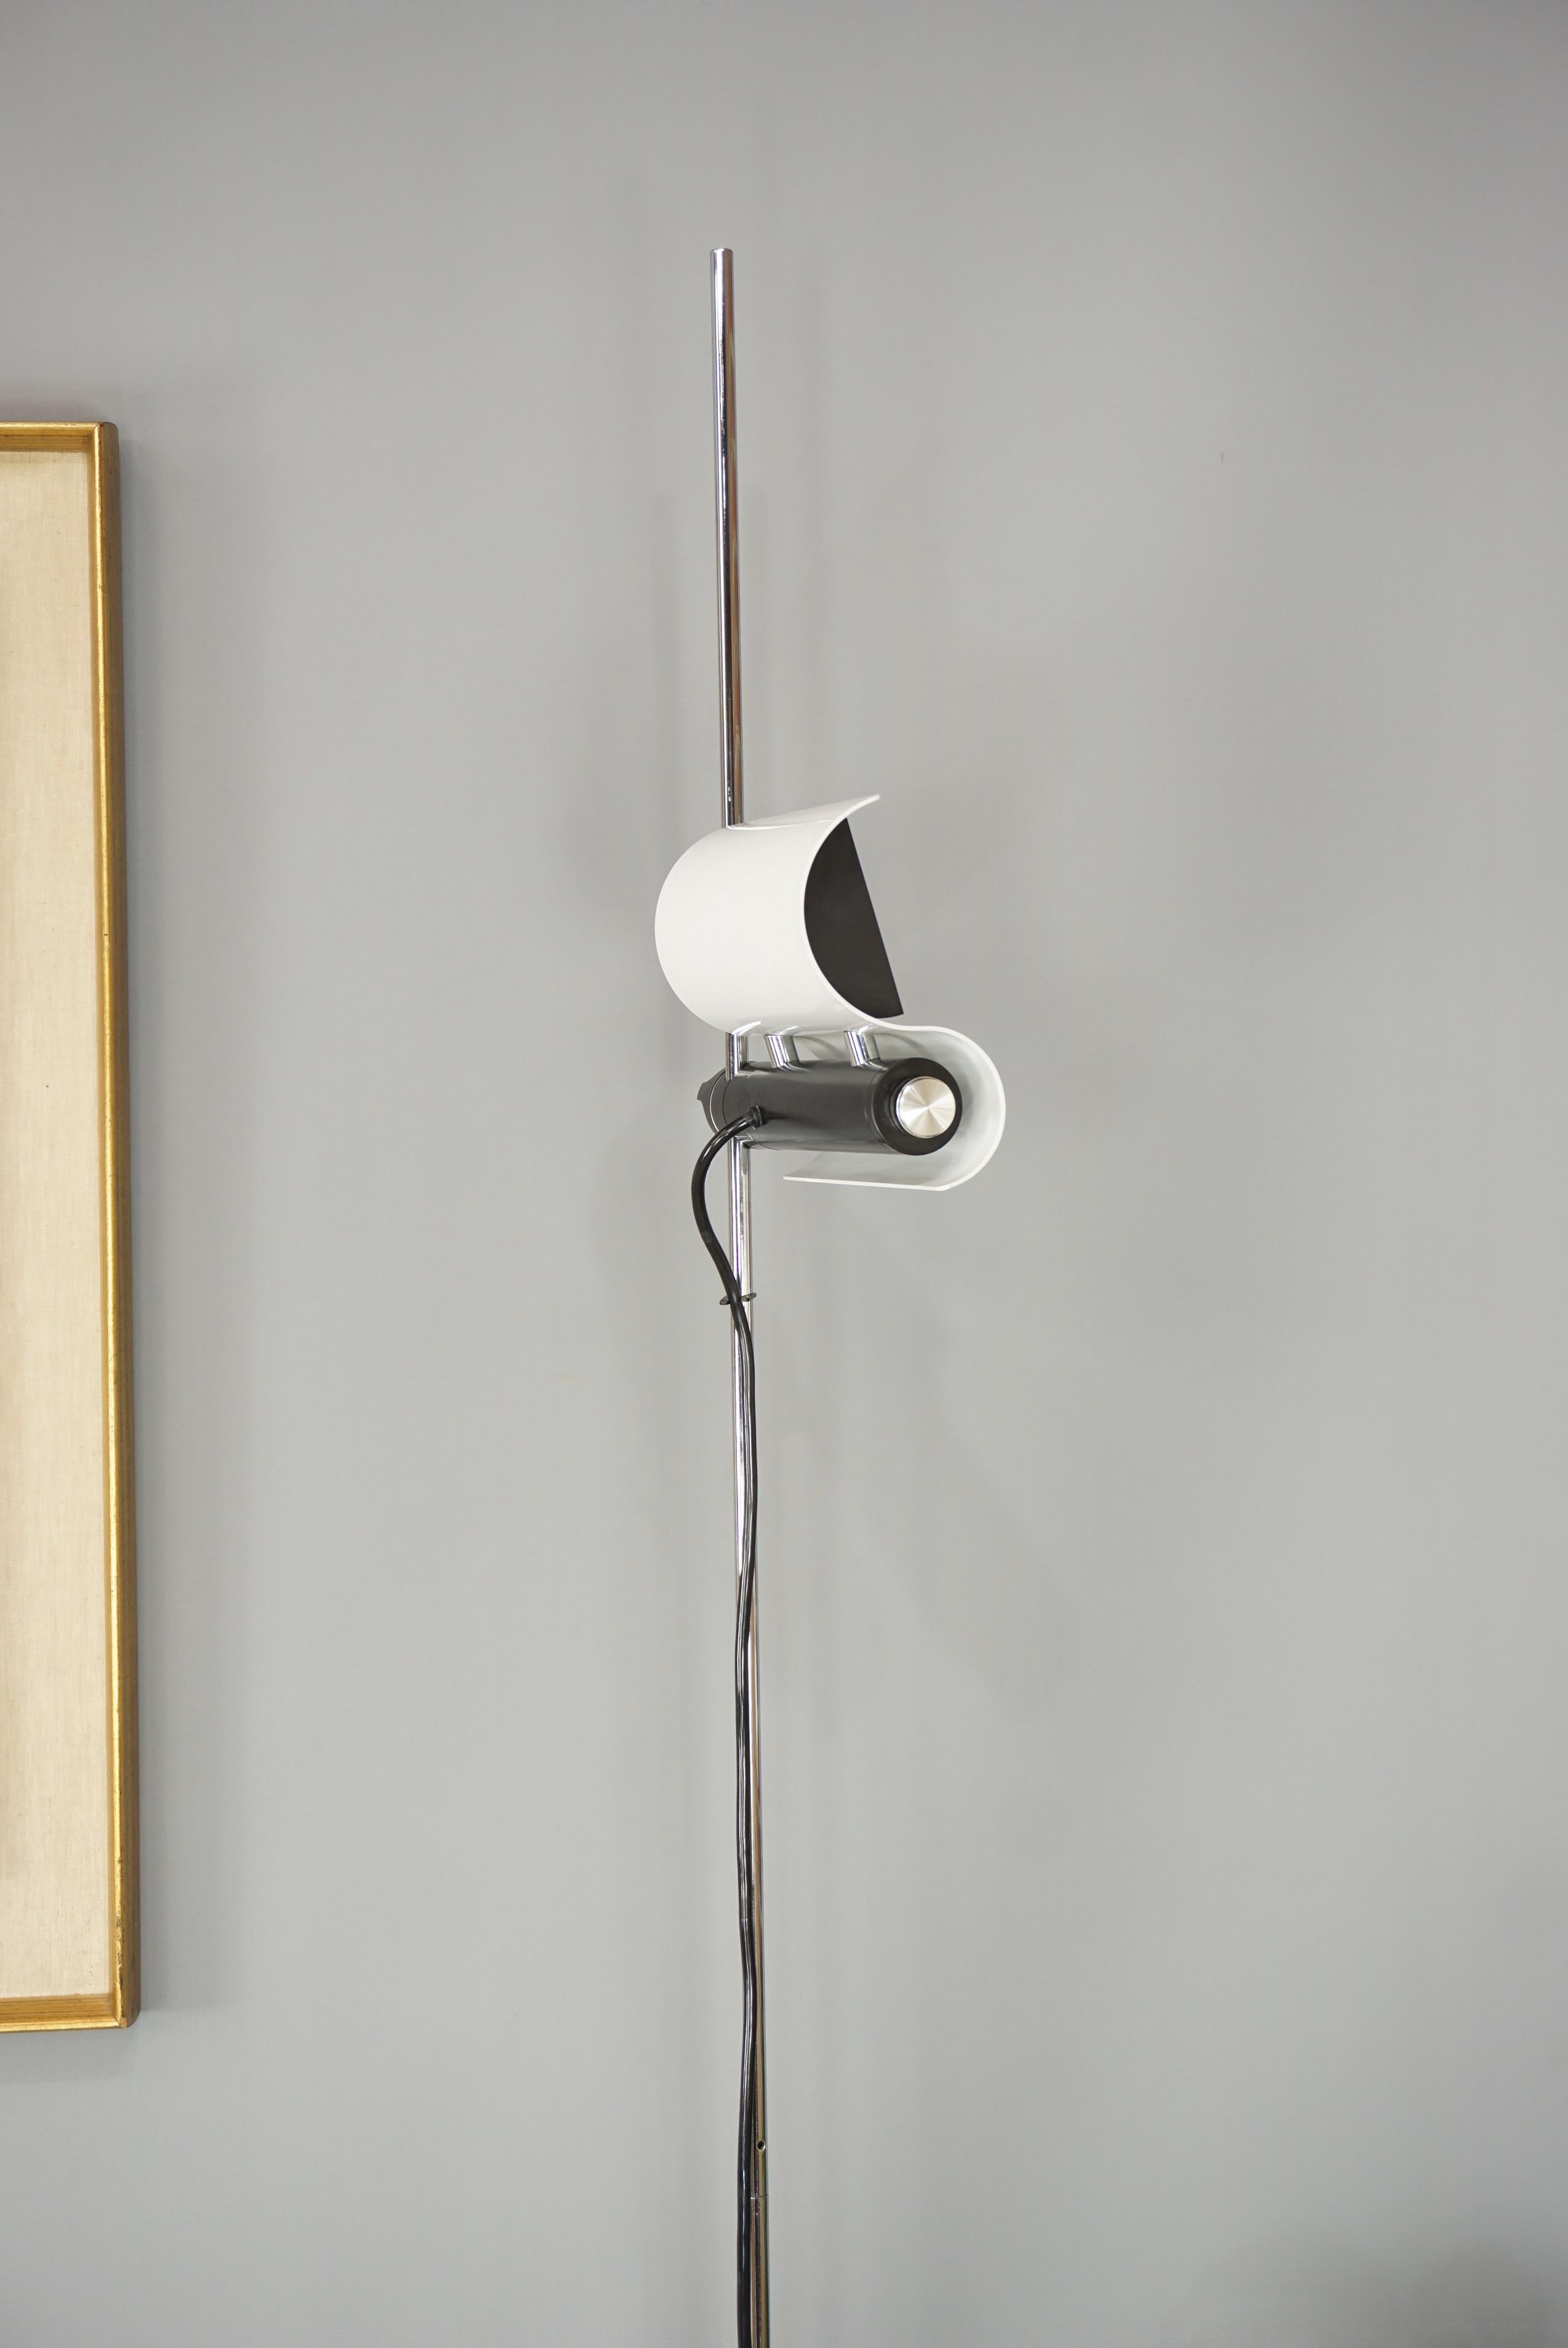 Vico Magistretti's DIM 333 White Floor Lamp Design from the 1970s  11